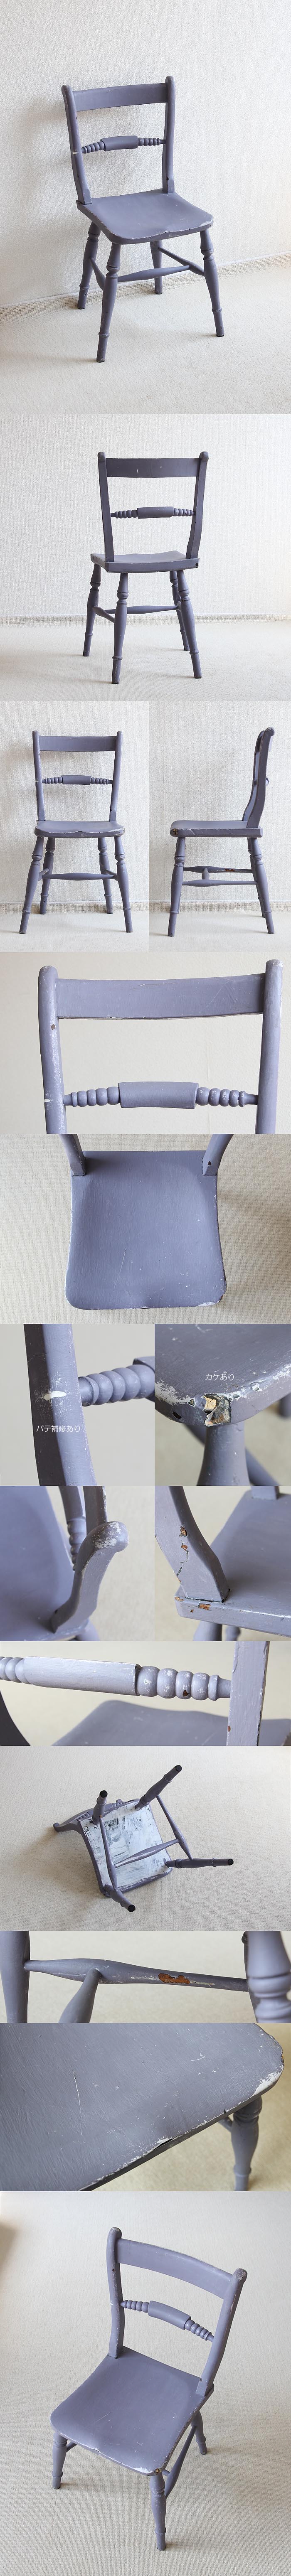 イギリス アンティーク ペイントチェア 木製椅子 シャビー 英国 家具「バーバックチェア」V-591